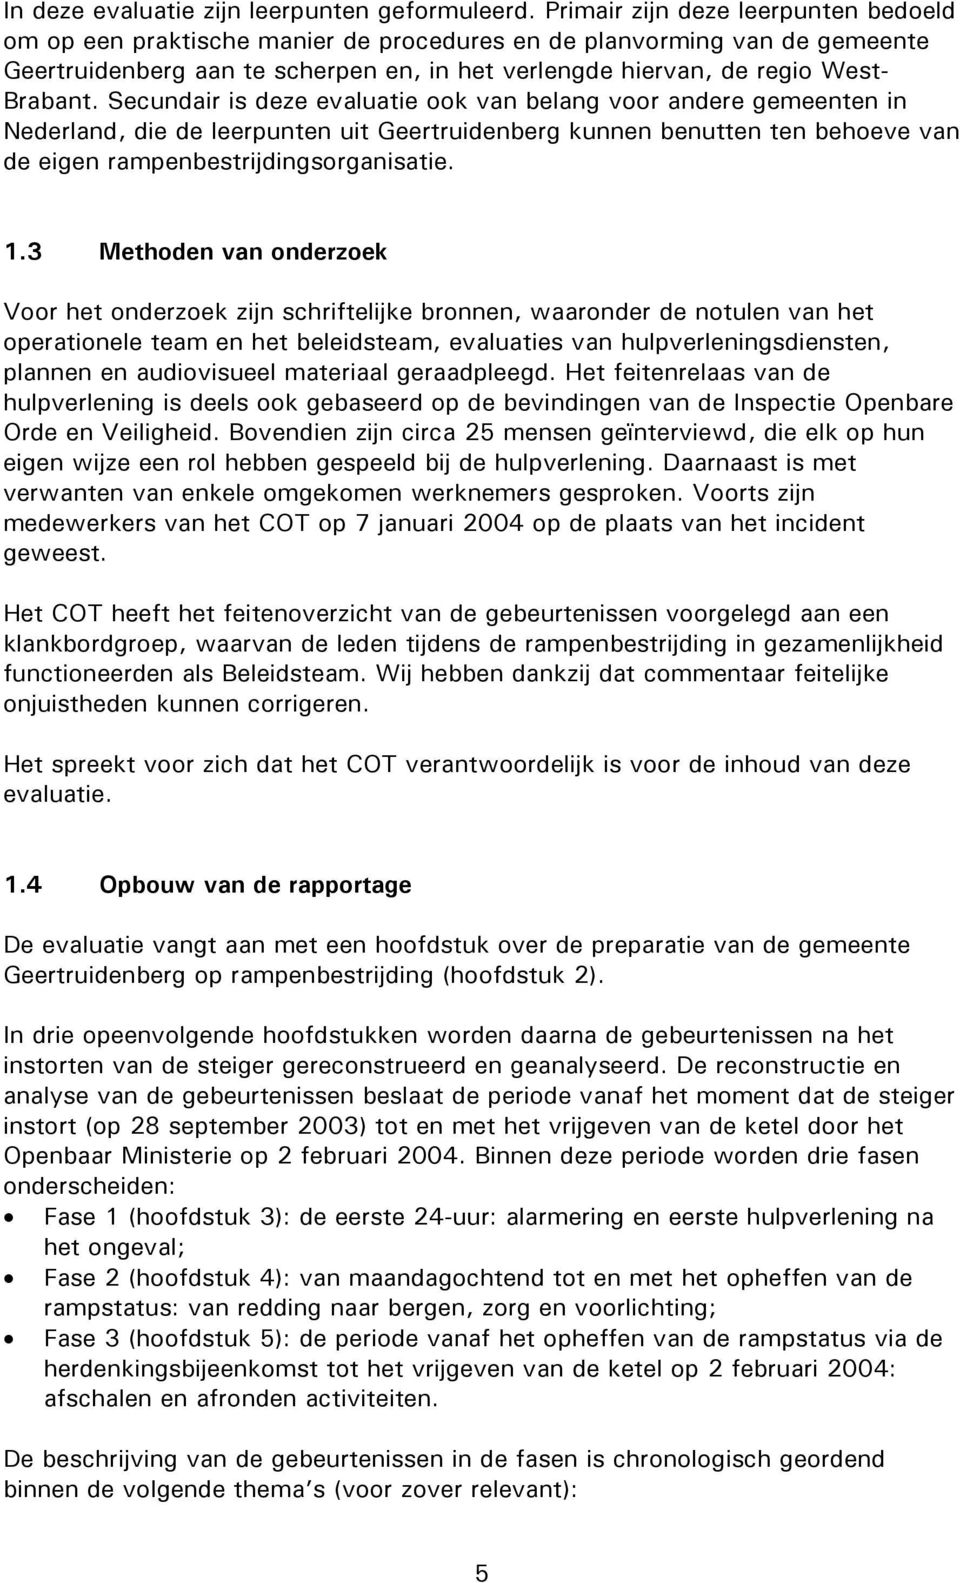 Secundair is deze evaluatie ook van belang voor andere gemeenten in Nederland, die de leerpunten uit Geertruidenberg kunnen benutten ten behoeve van de eigen rampenbestrijdingsorganisatie. 1.